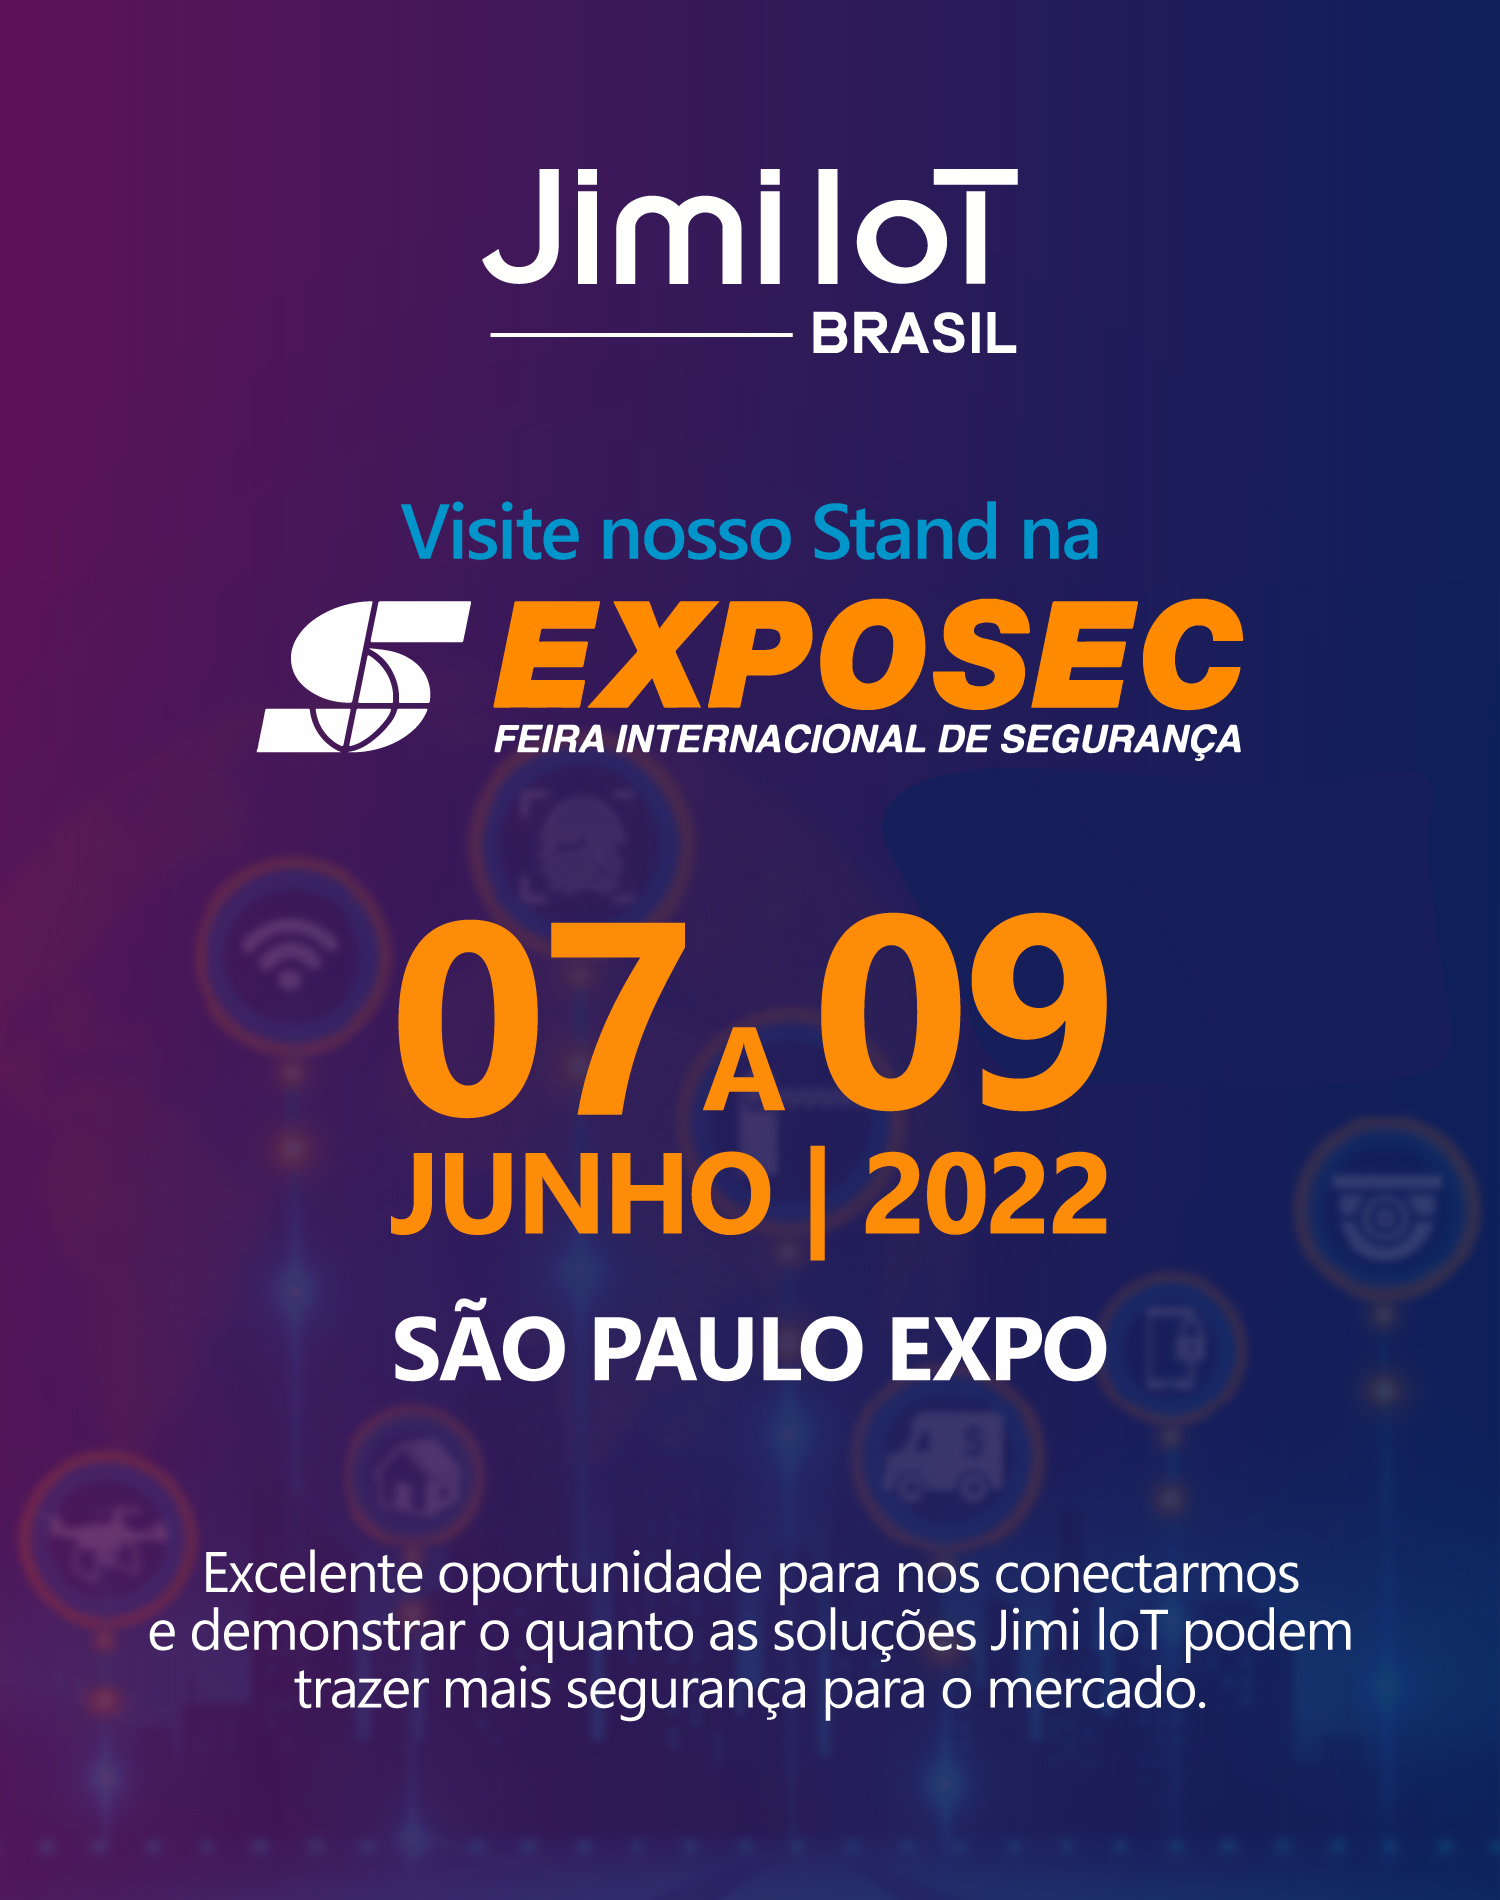 ExpoSec 2022